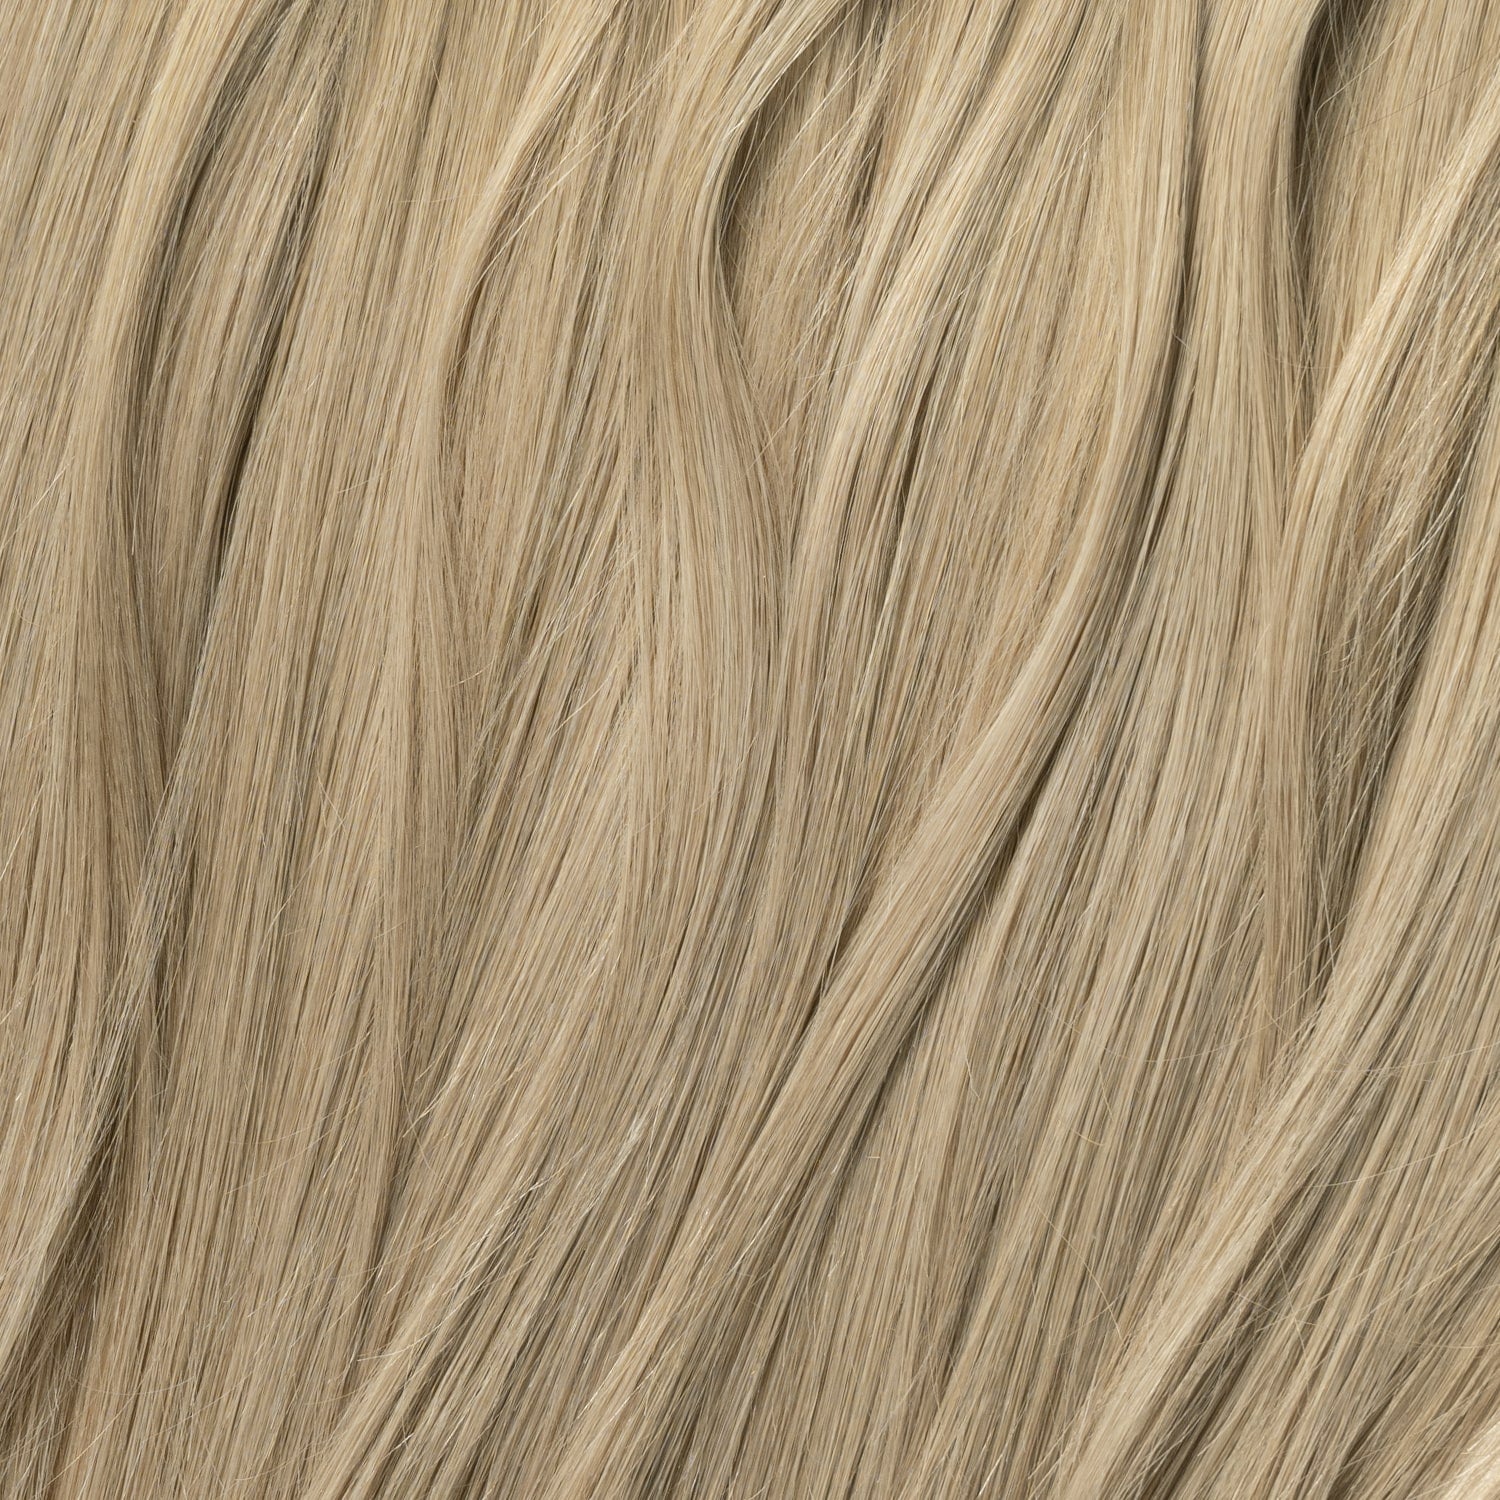 Nail Hair - Dark Ash Blonde 14B